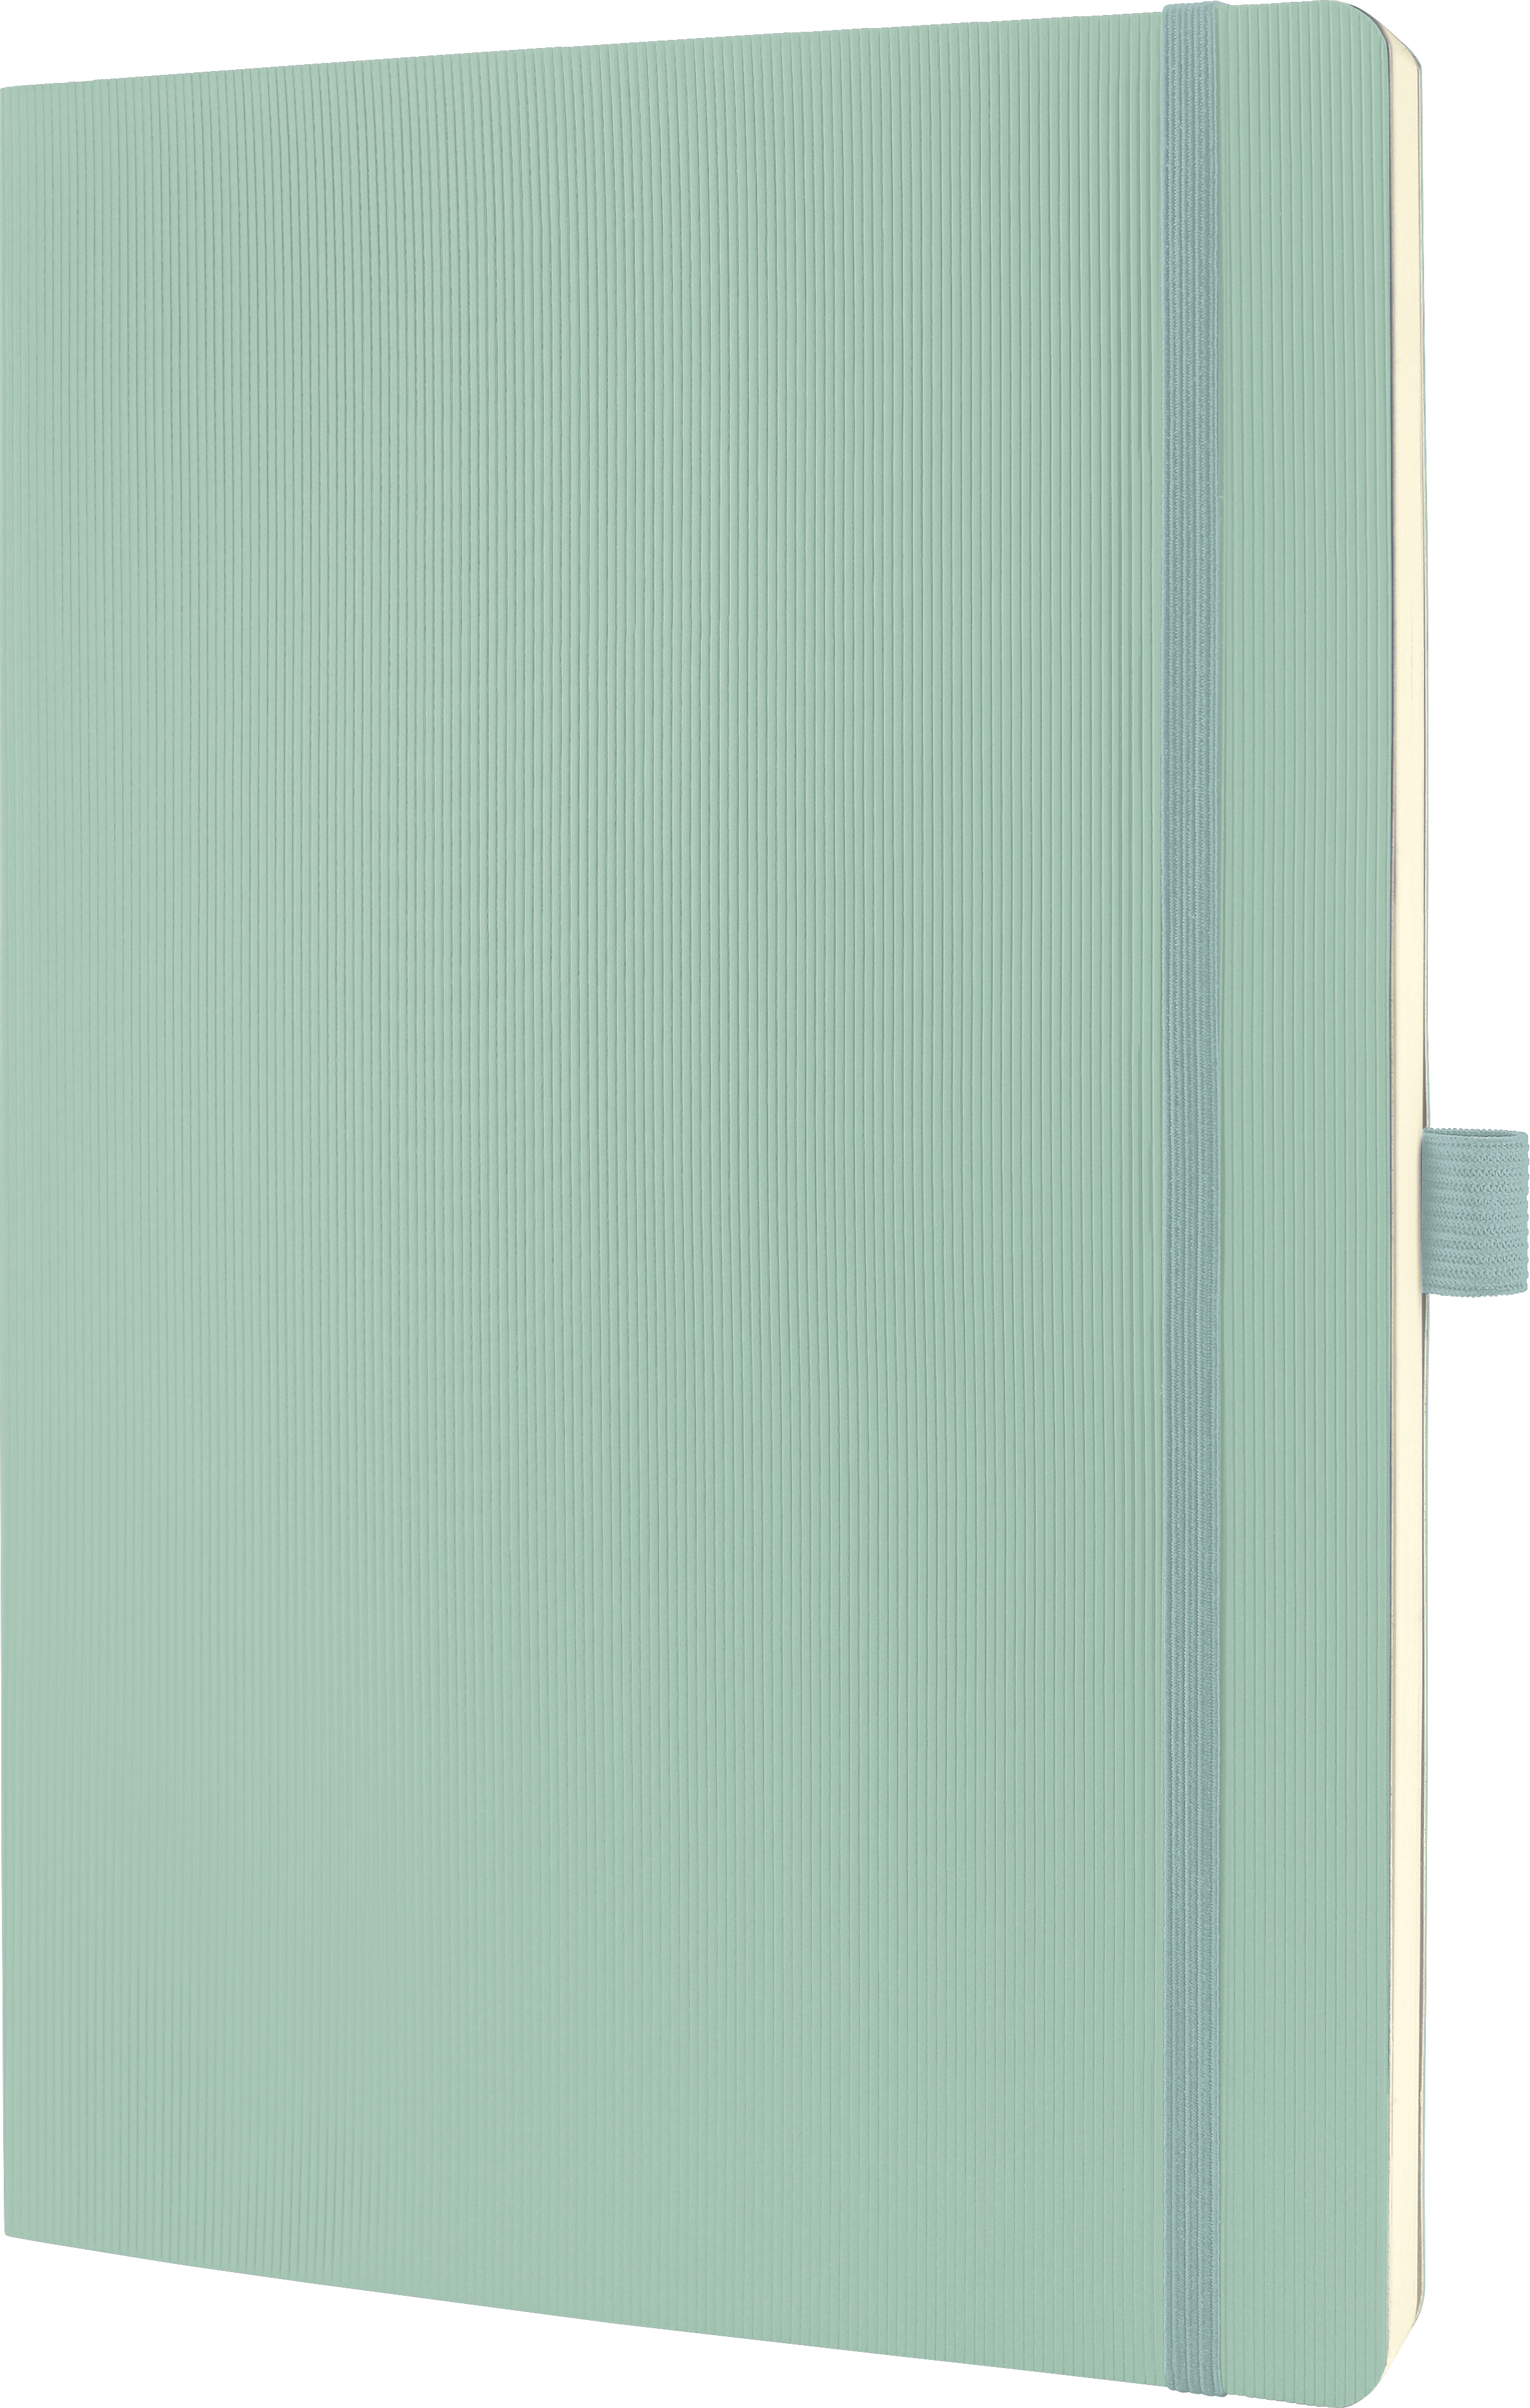 CONCEPTUM Carnet de notes A4 CO334 mint green,quadrillé 194 pages